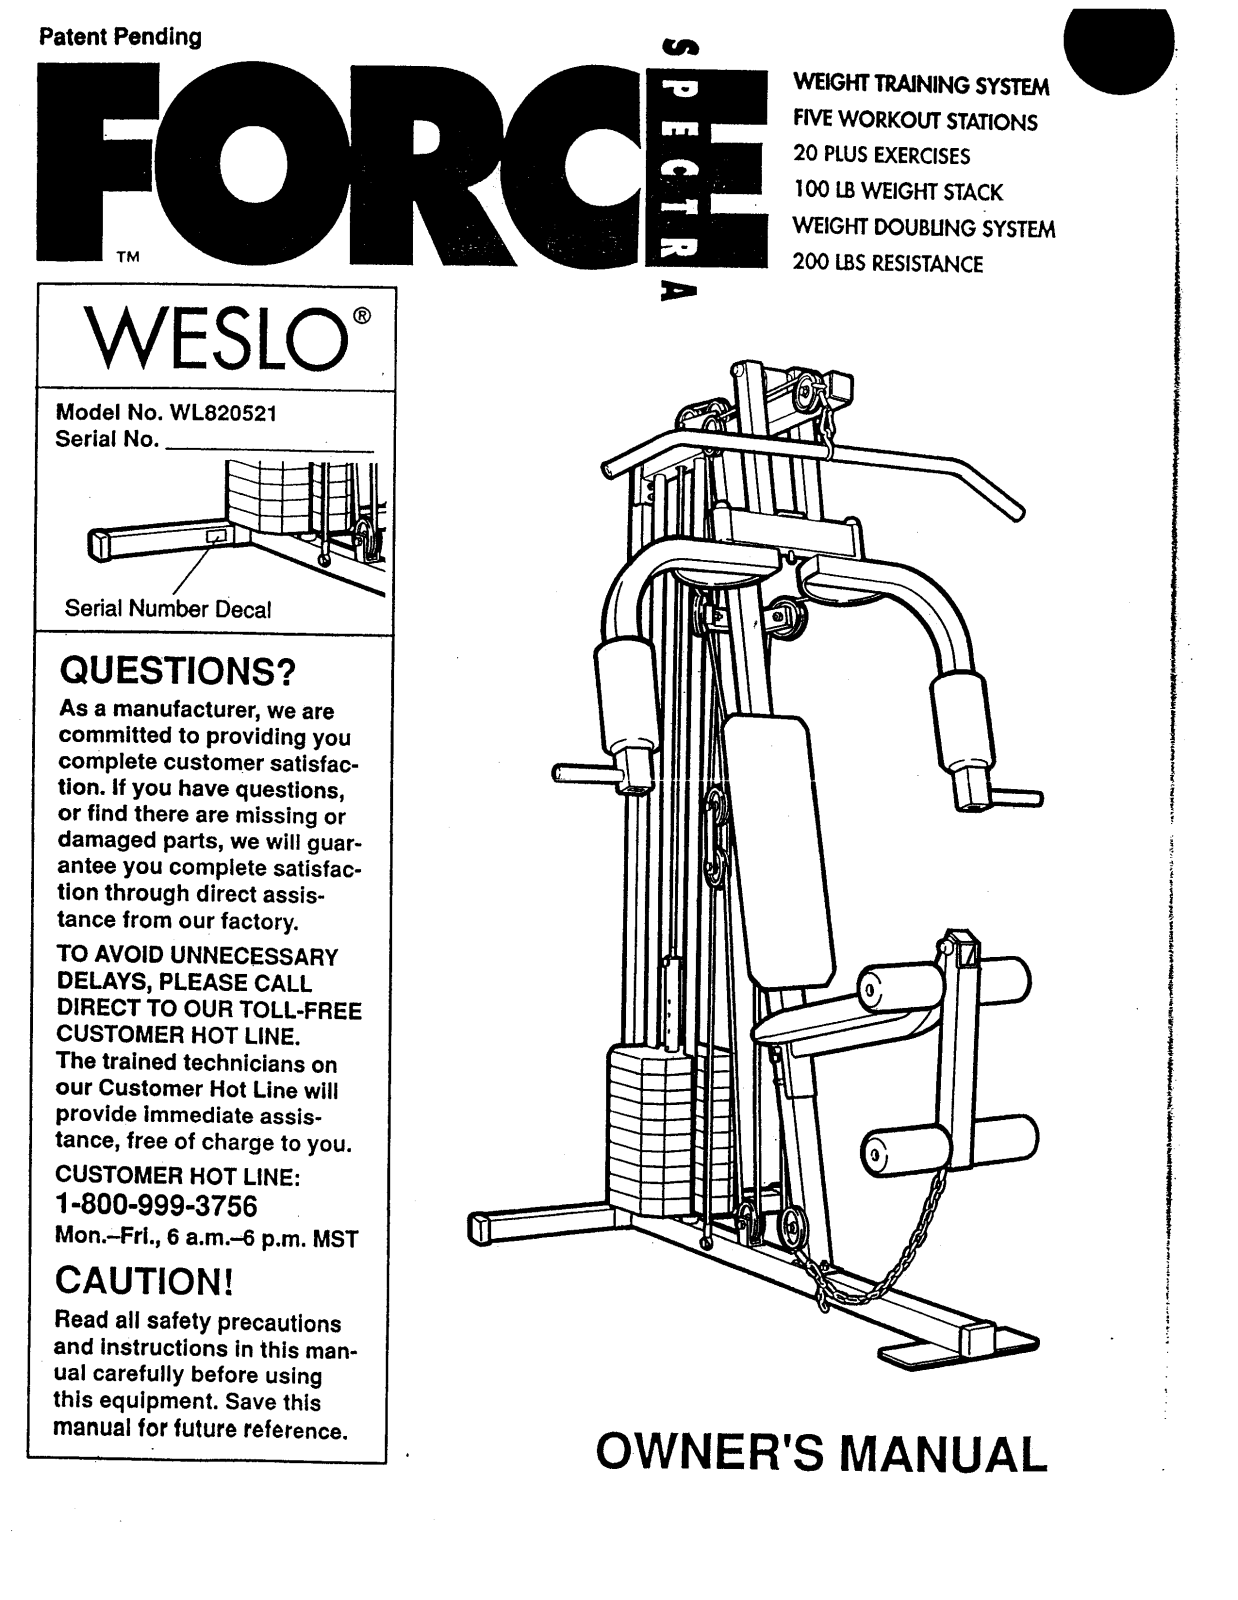 Weslo WL820521 Owner's Manual